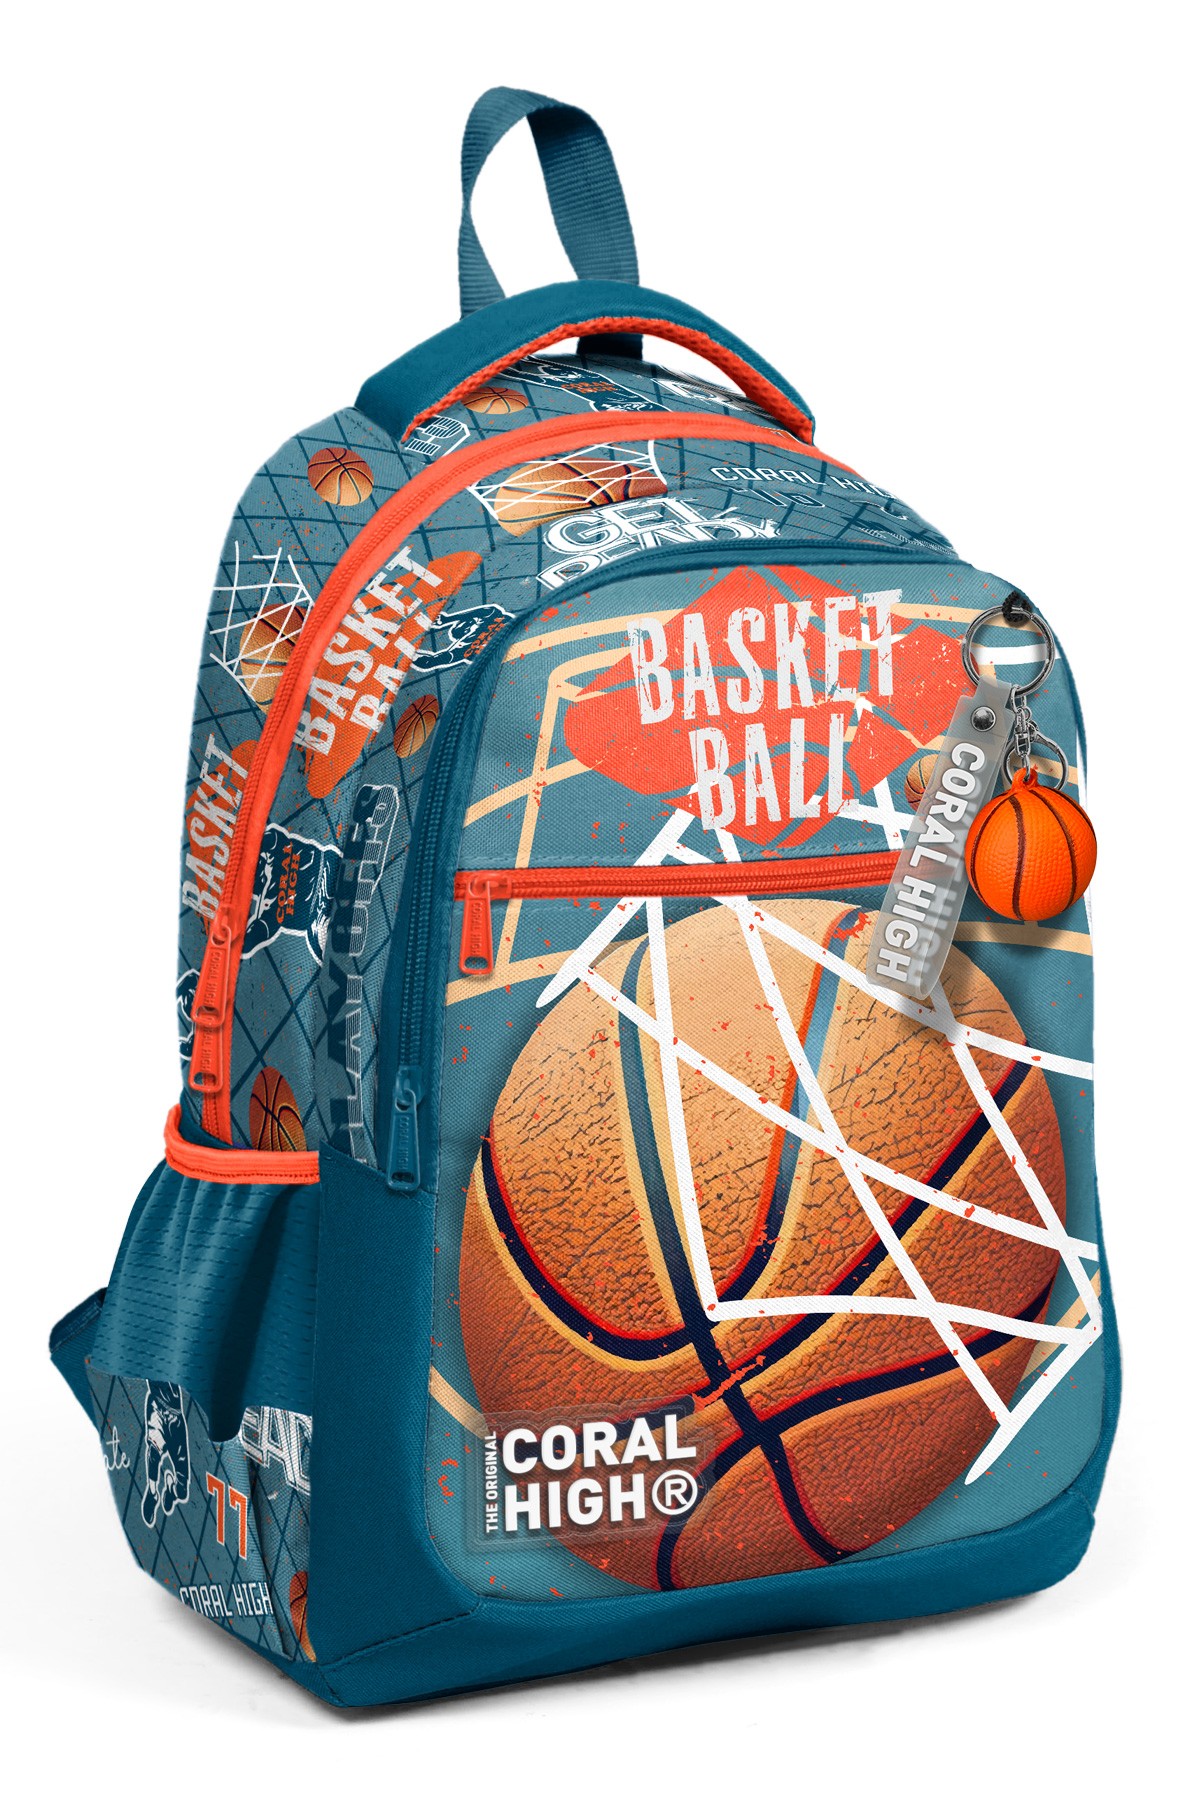 Coral High Kids Nefti Turuncu Basketbol Desenli Üç Bölmeli Okul Sırt Çantası 23651